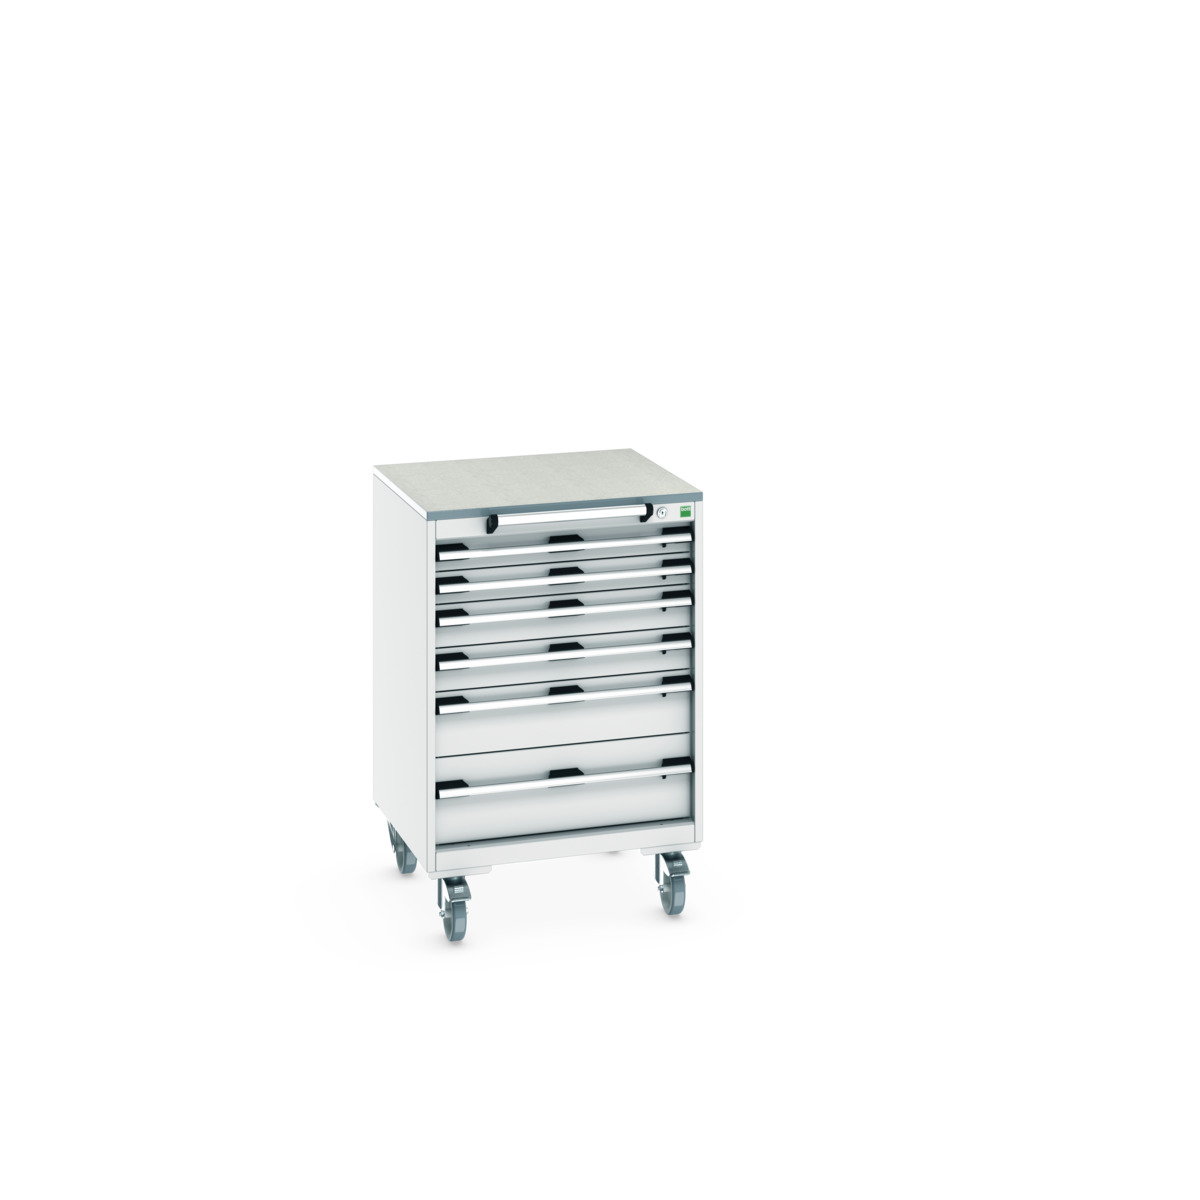 40402152.16V - cubio mobile cabinet